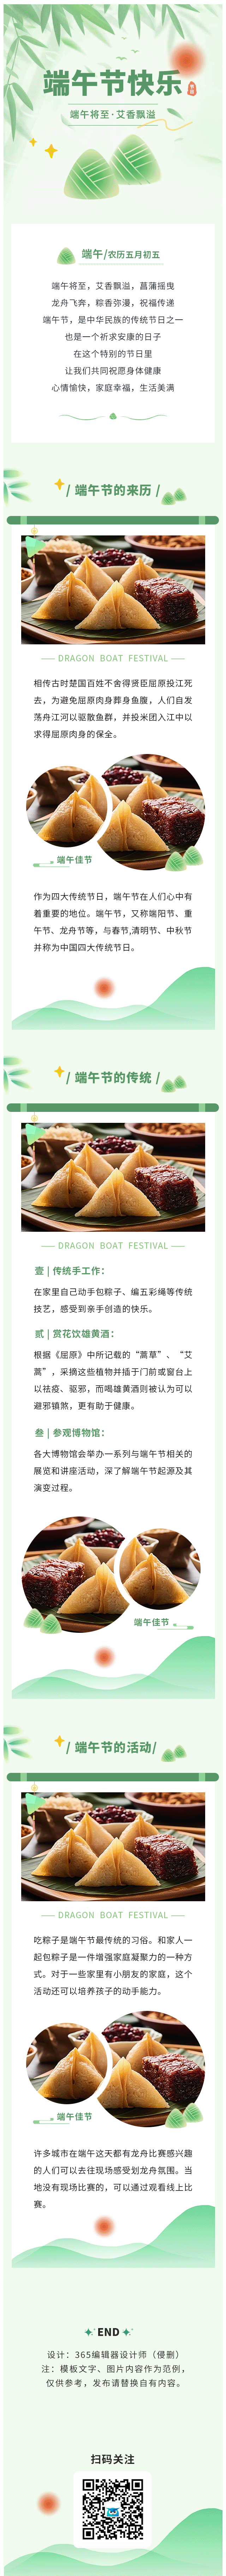 端午节传统节日节日习俗粽子赛龙舟中国风